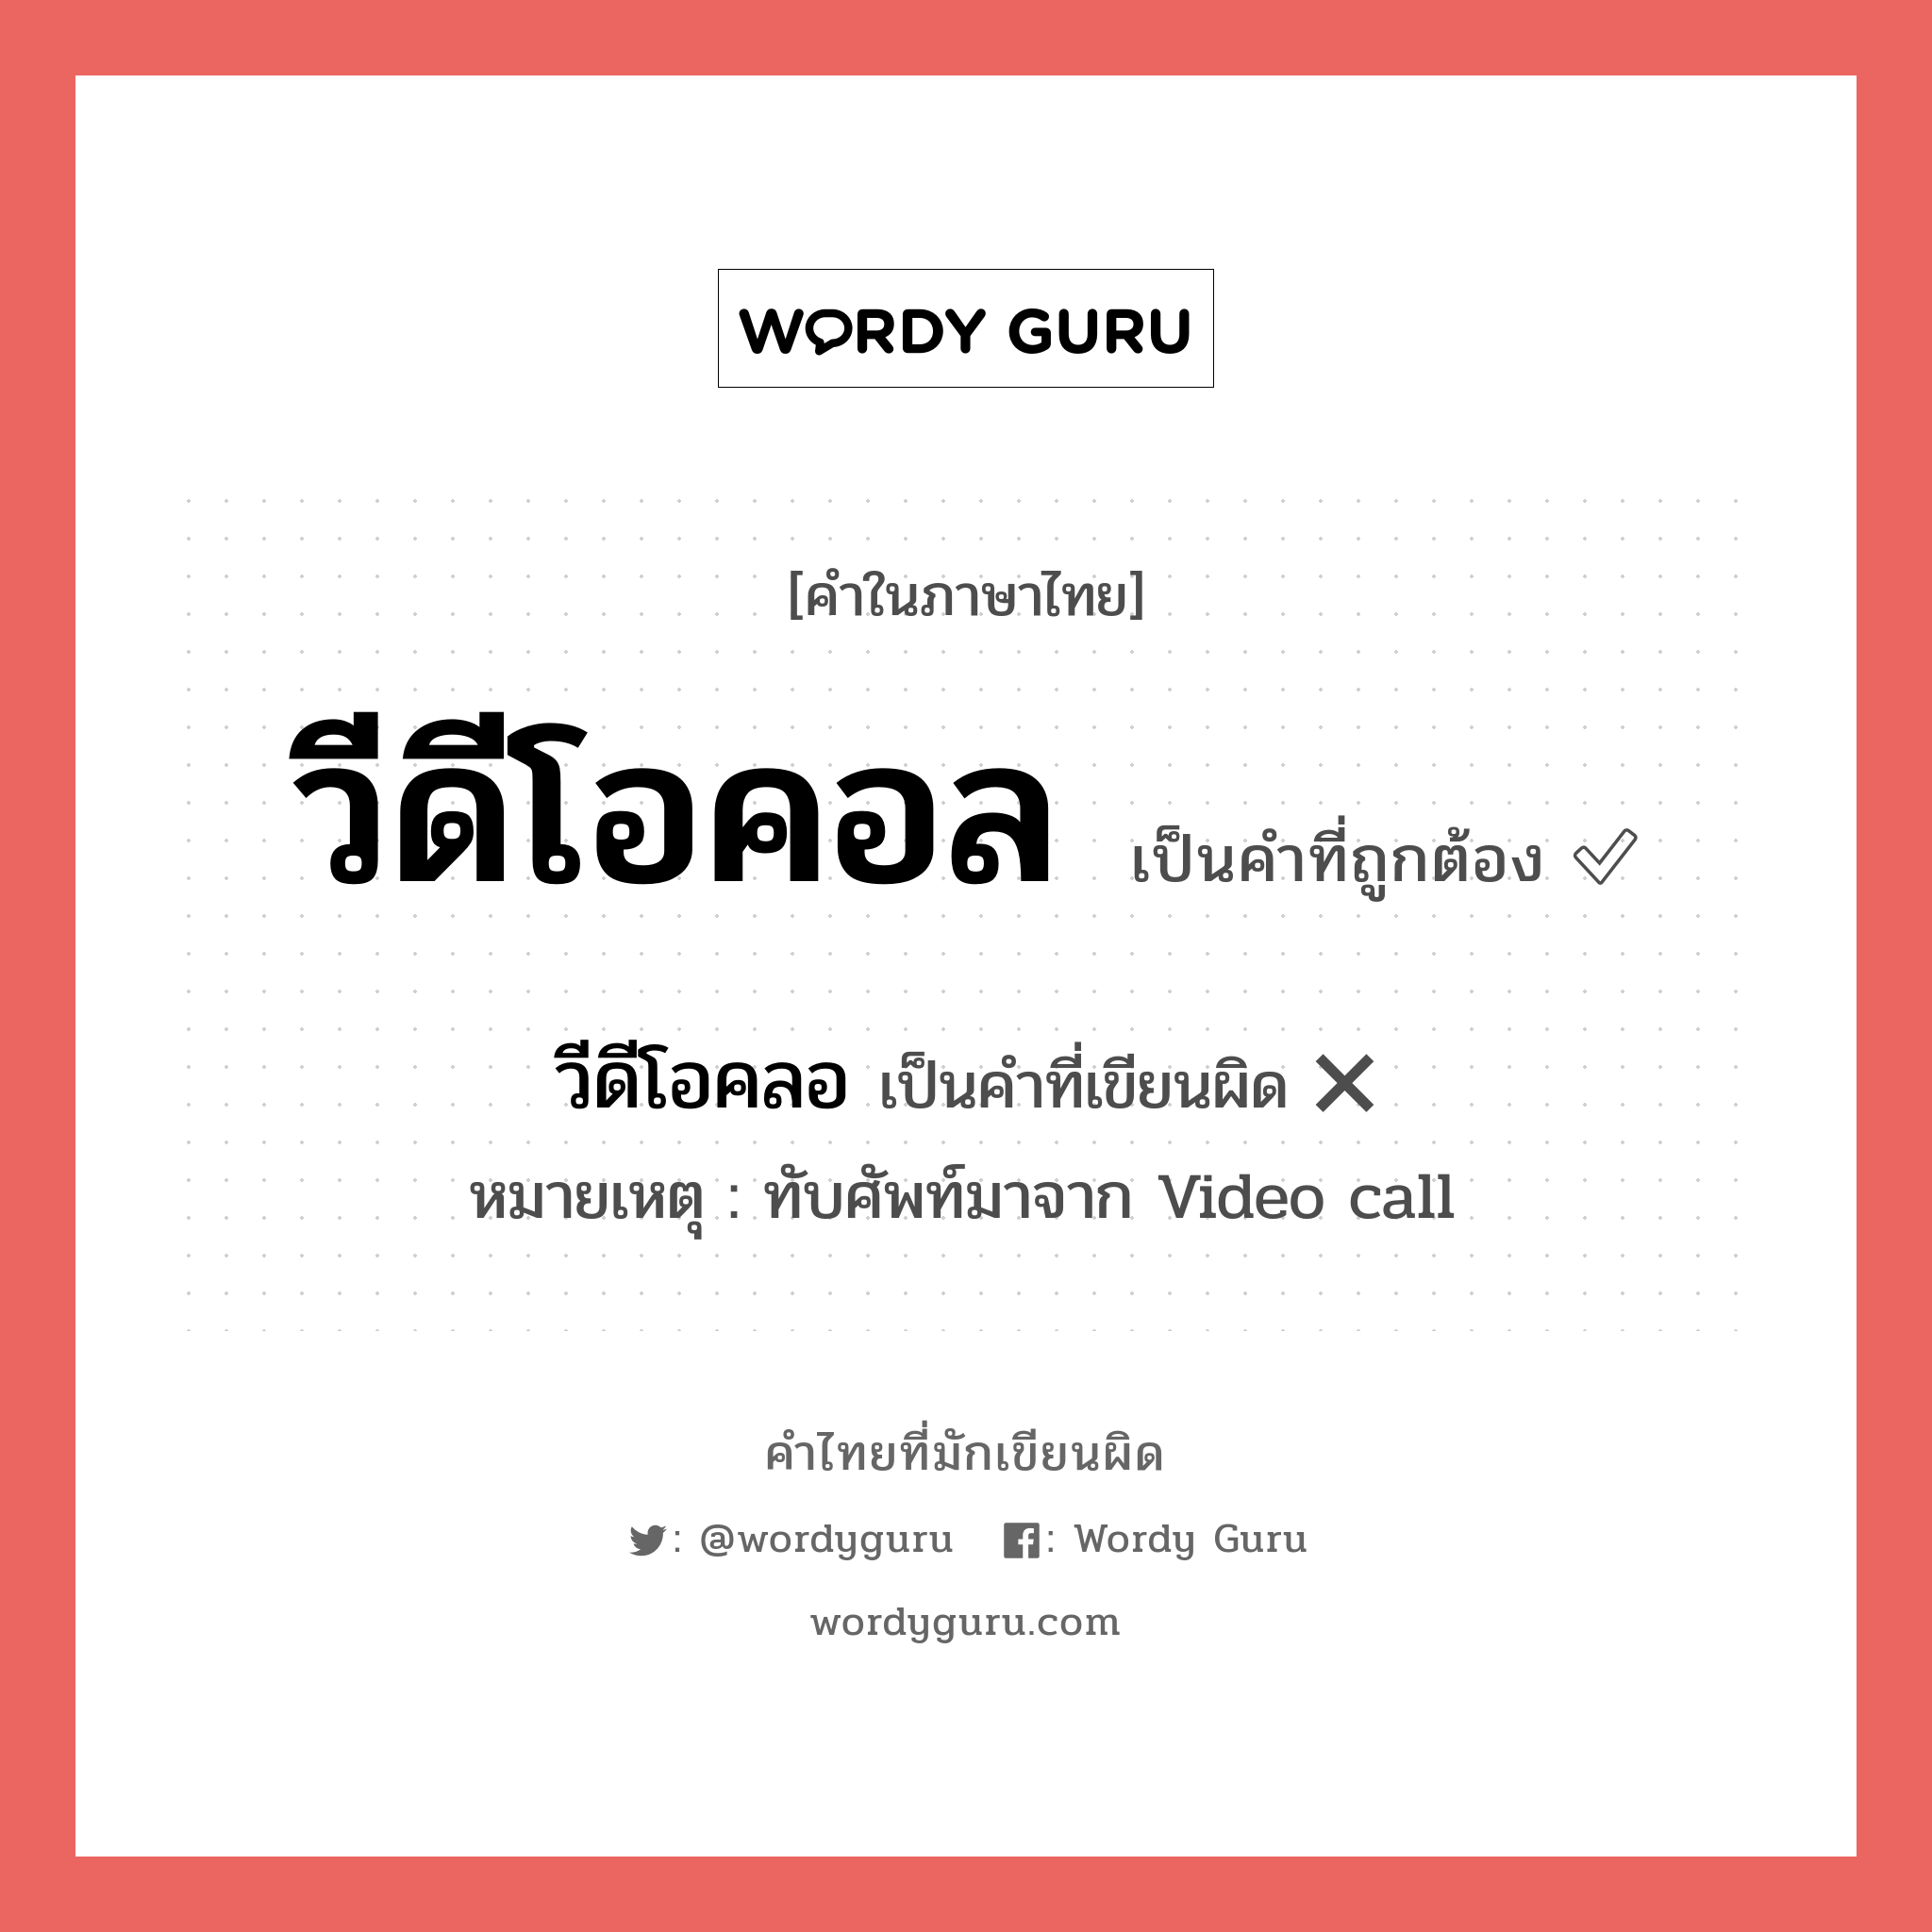 วีดีโอคอล หรือ วีดีโอคลอ คำไหนเขียนถูก?, คำในภาษาไทยที่มักเขียนผิด วีดีโอคอล คำที่ผิด ❌ วีดีโอคลอ หมายเหตุ ทับศัพท์มาจาก Video call หมวด การติดต่อสื่อสาร หมวด การติดต่อสื่อสาร